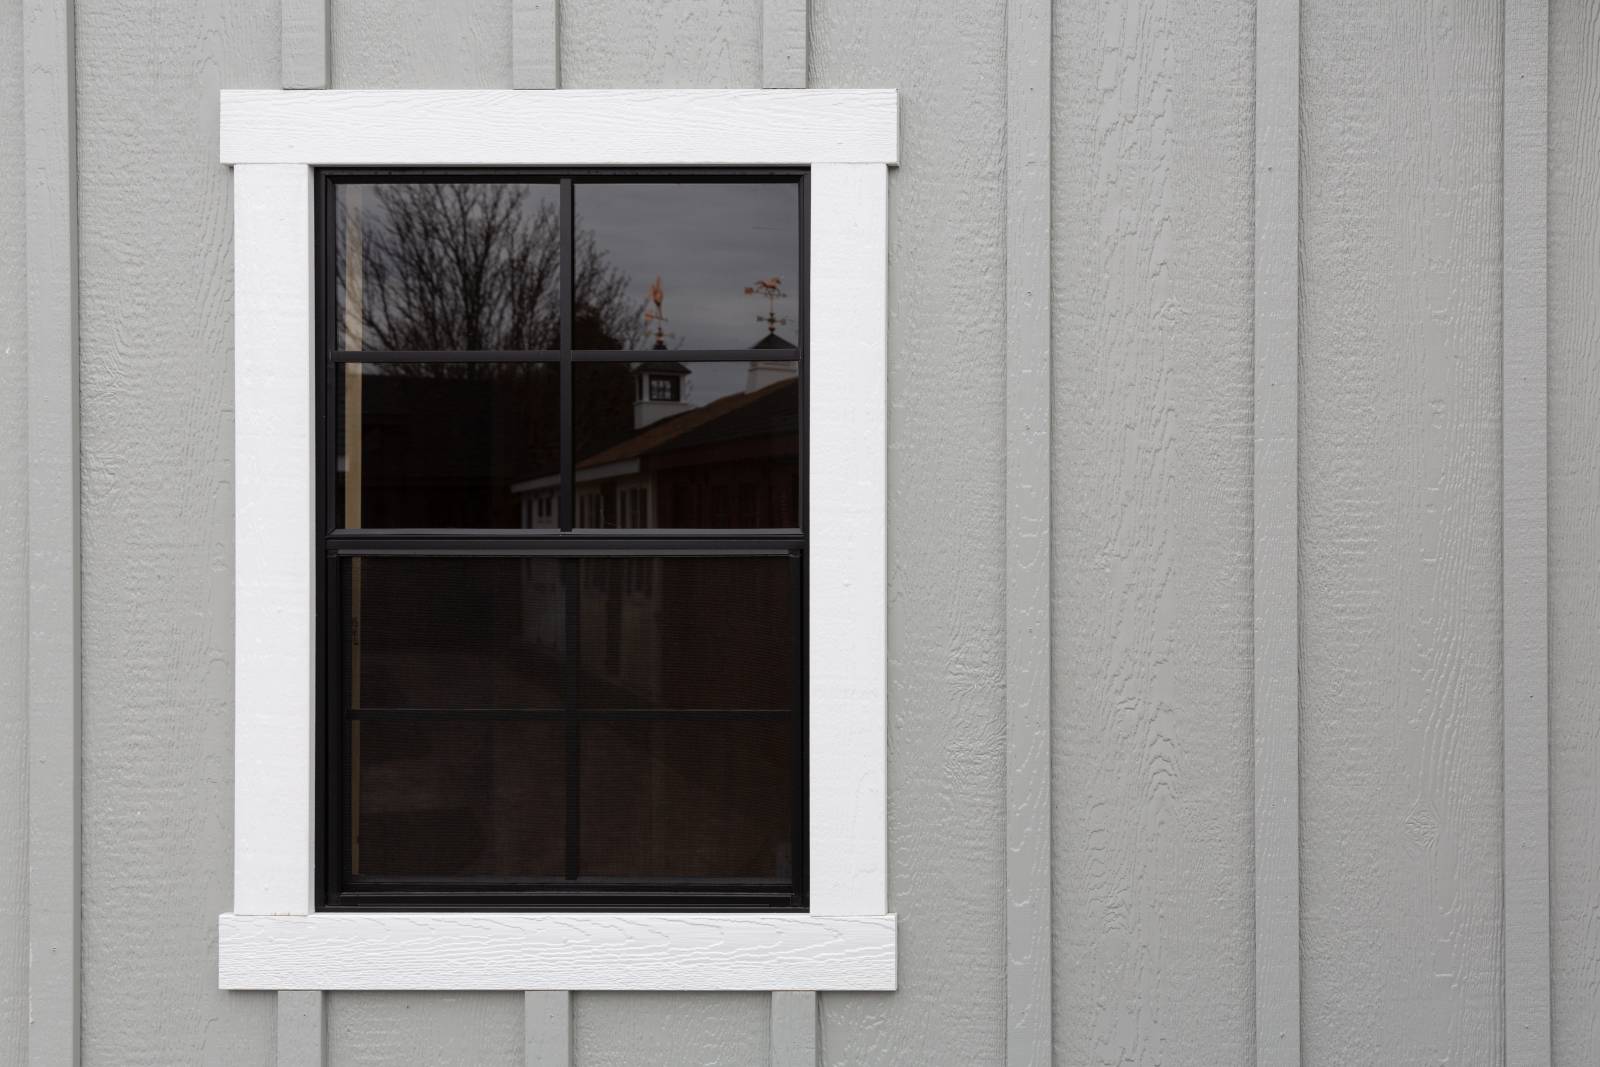 24" x 36" Window • Board & Batten Siding • Poolside Bar